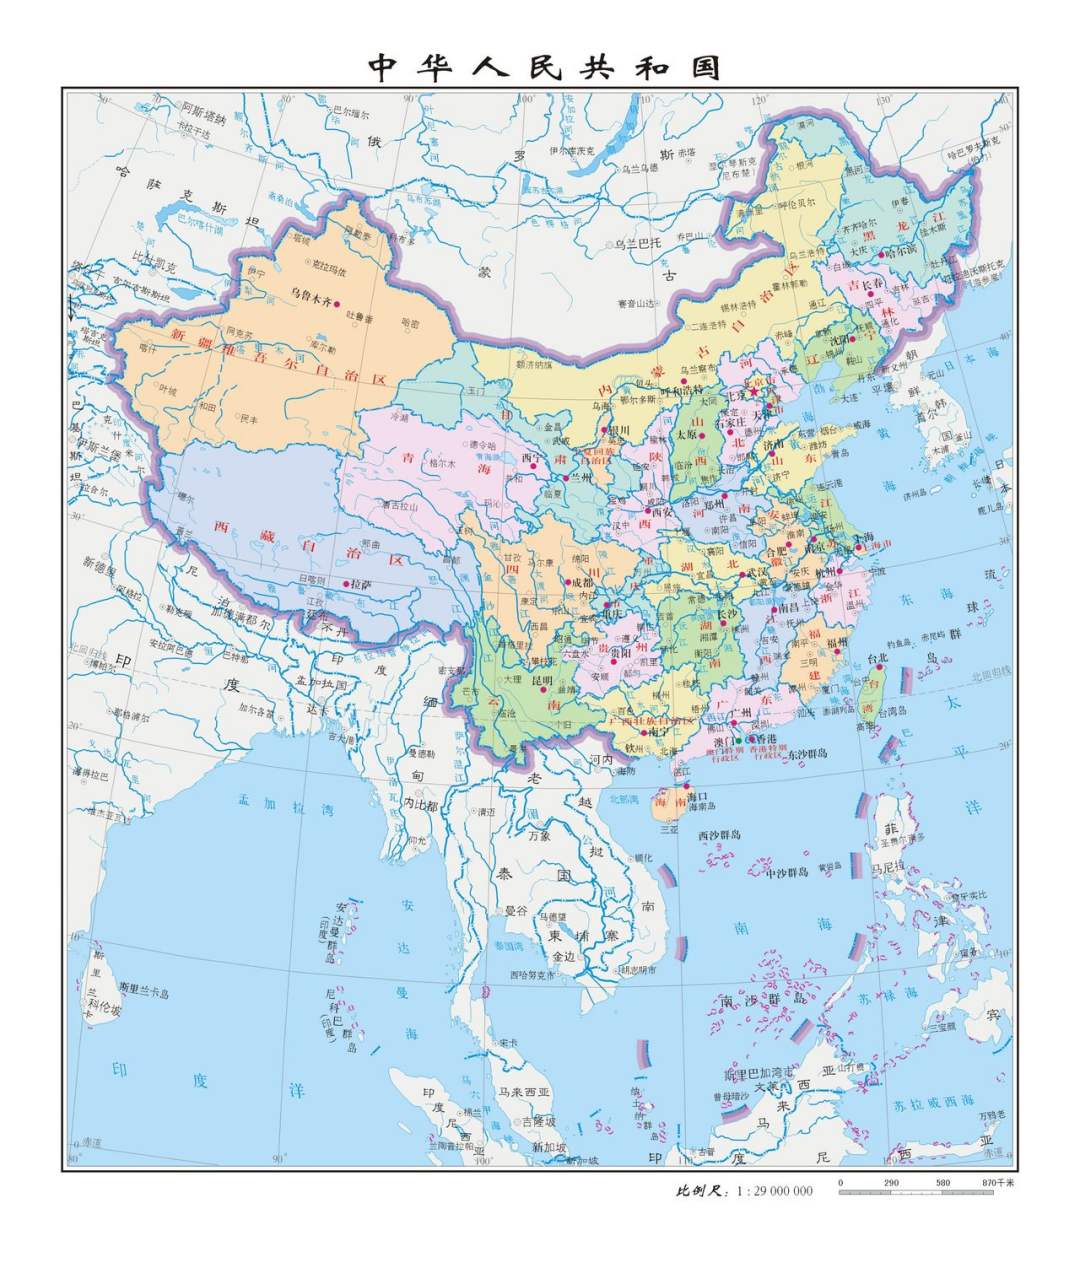 中国行政区划图 中华人民共和国行政区划